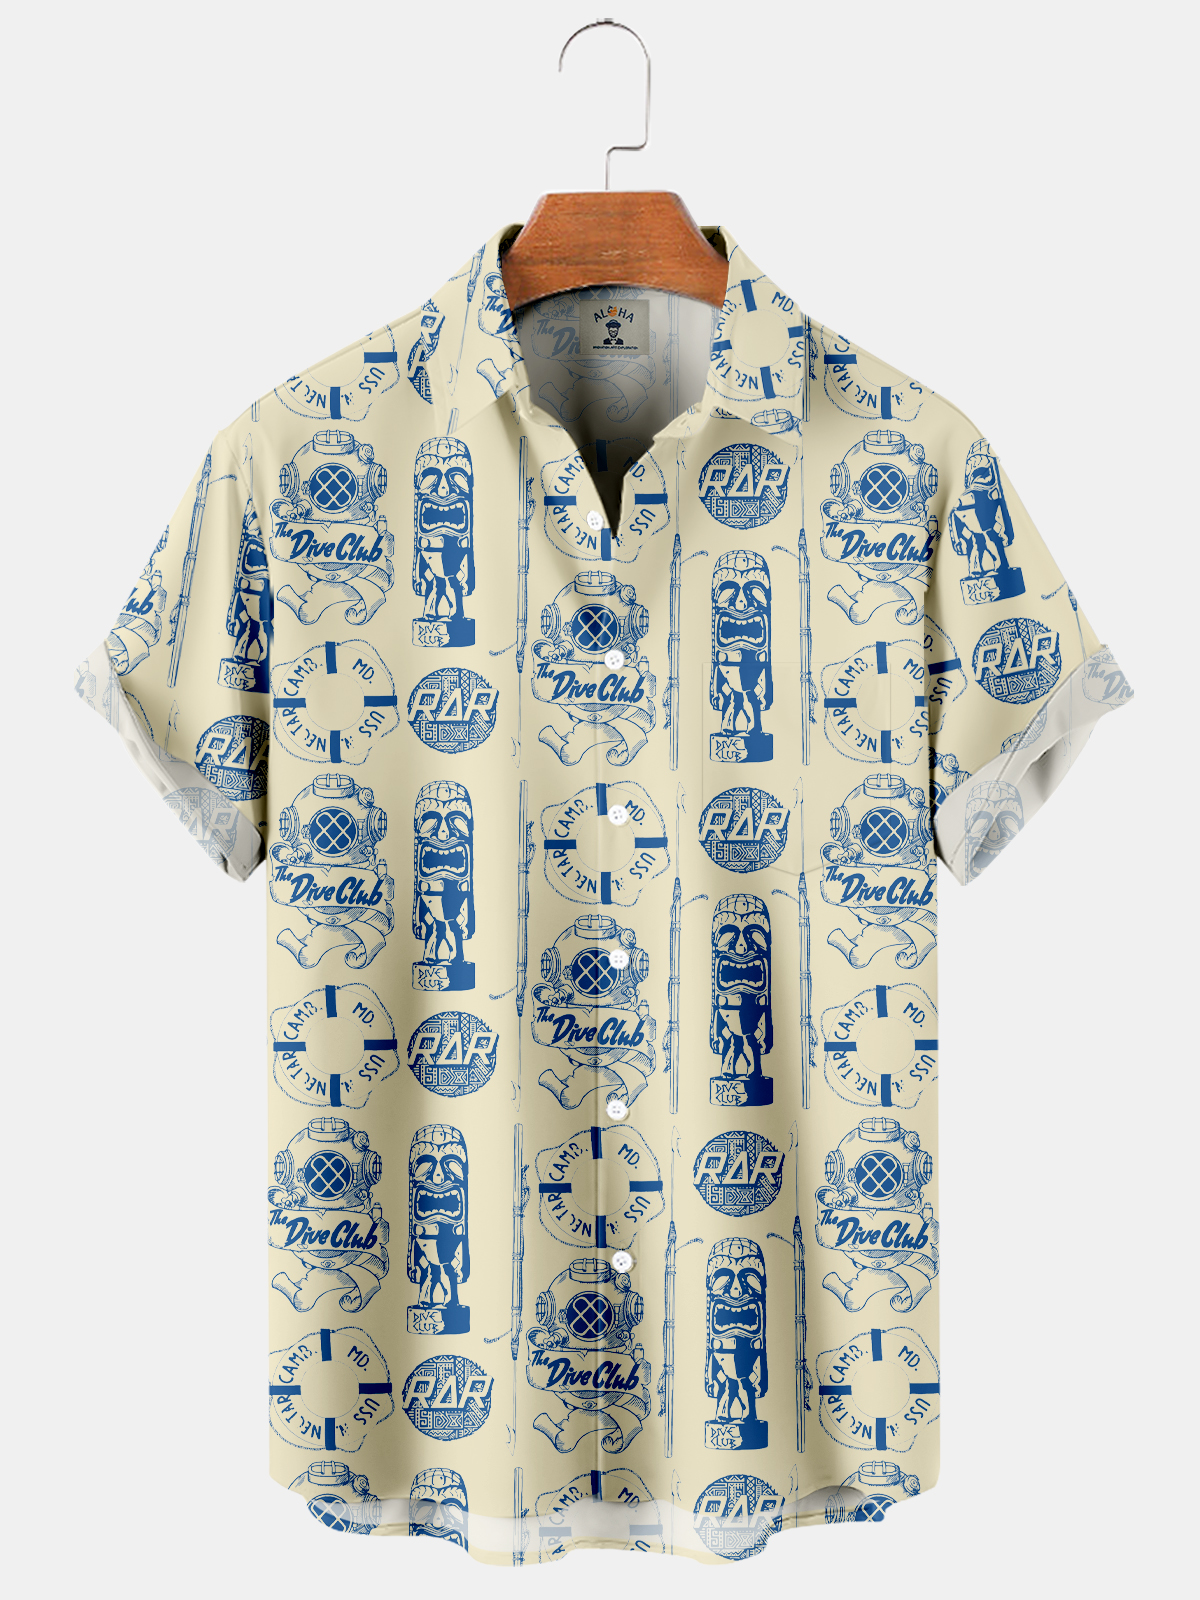 Men's Hawaiian THE DIVE CLUB Custom Printed Short Sleeve Shirt-Garamode